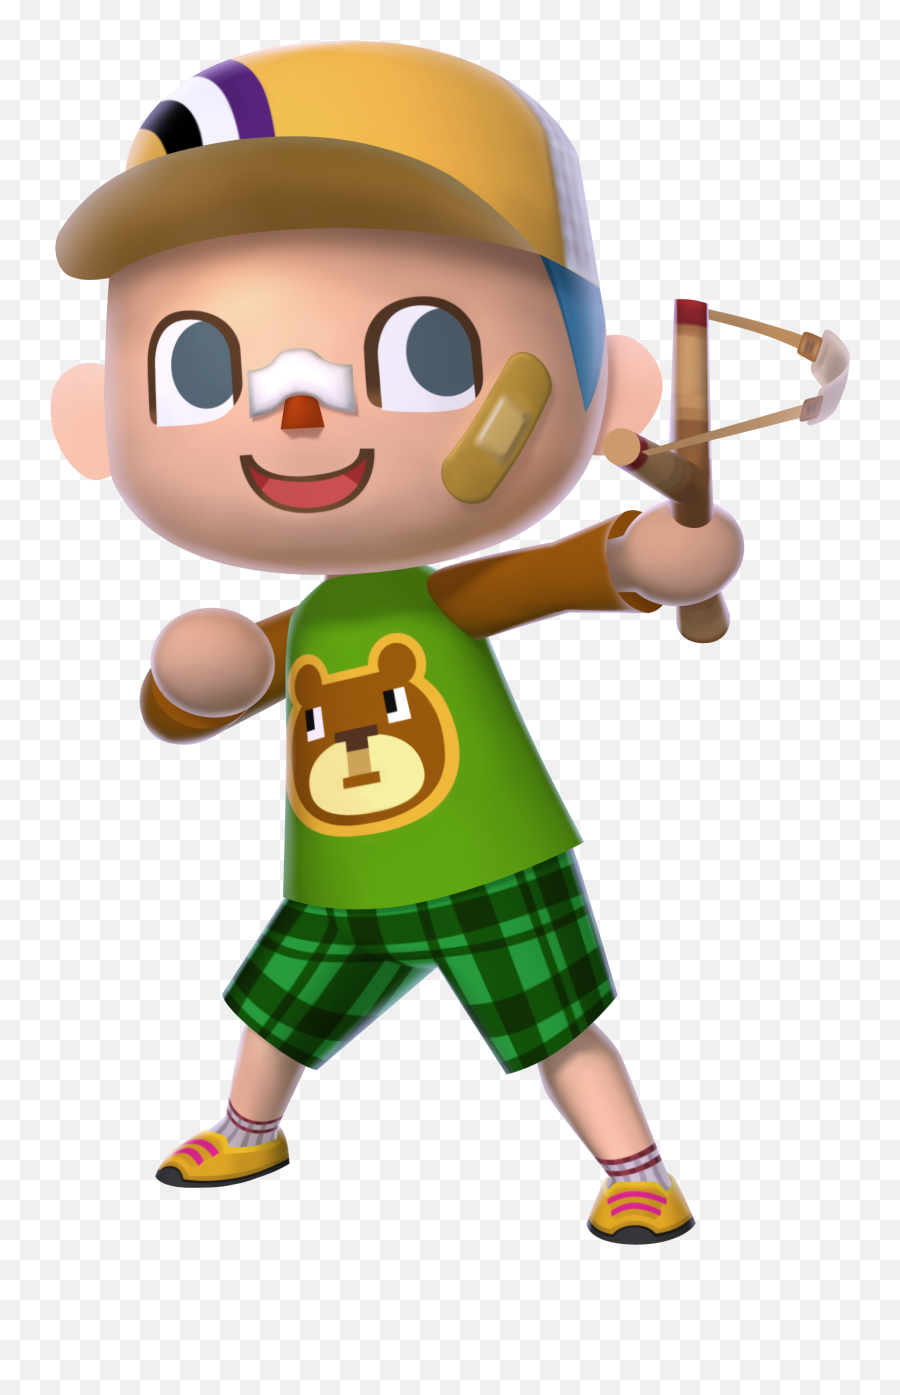 Png Royalty Free Boy Transparent Animal - Animal Crossing Villager Png,Animal Crossing Transparent